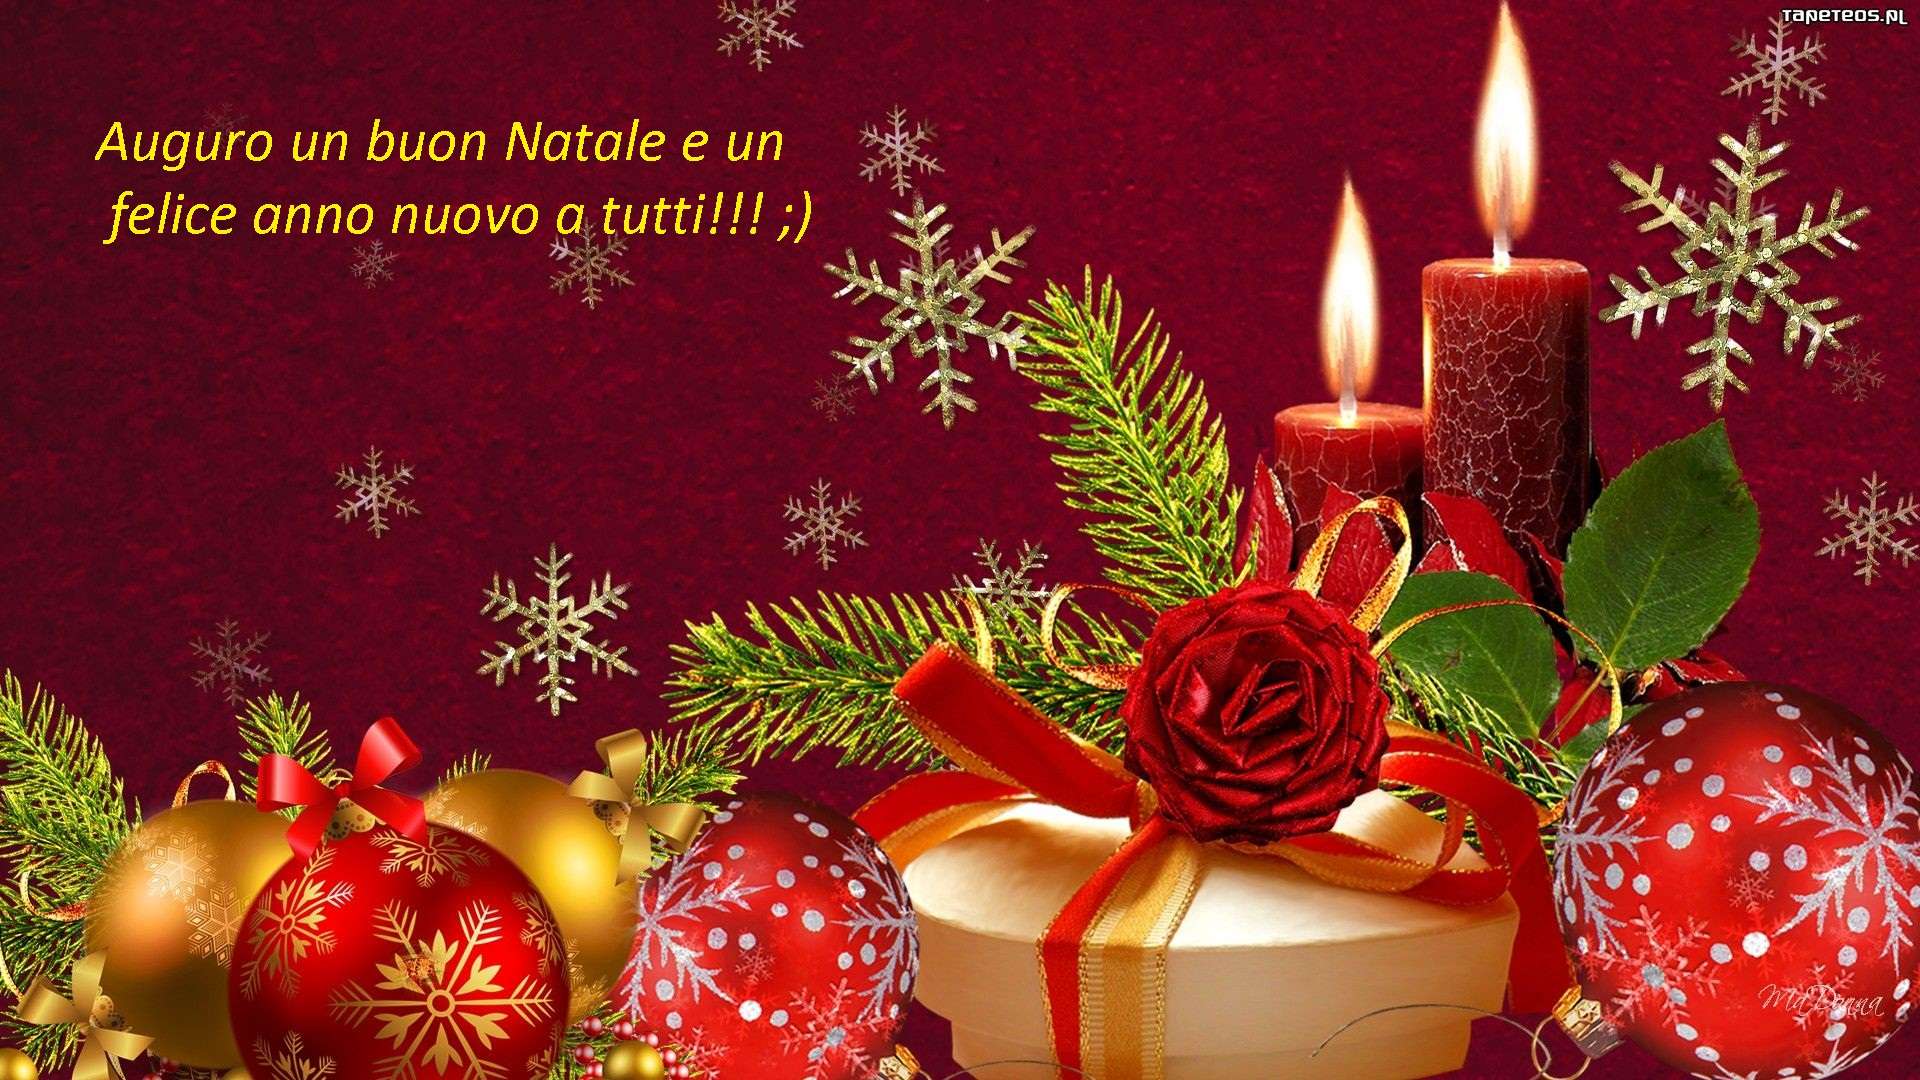 Auguri Buon Natale E Felice Anno Nuovo.Auguri Di Buon Natale E Felice Anno Nuovo Baronerosso It Forum Modellismo